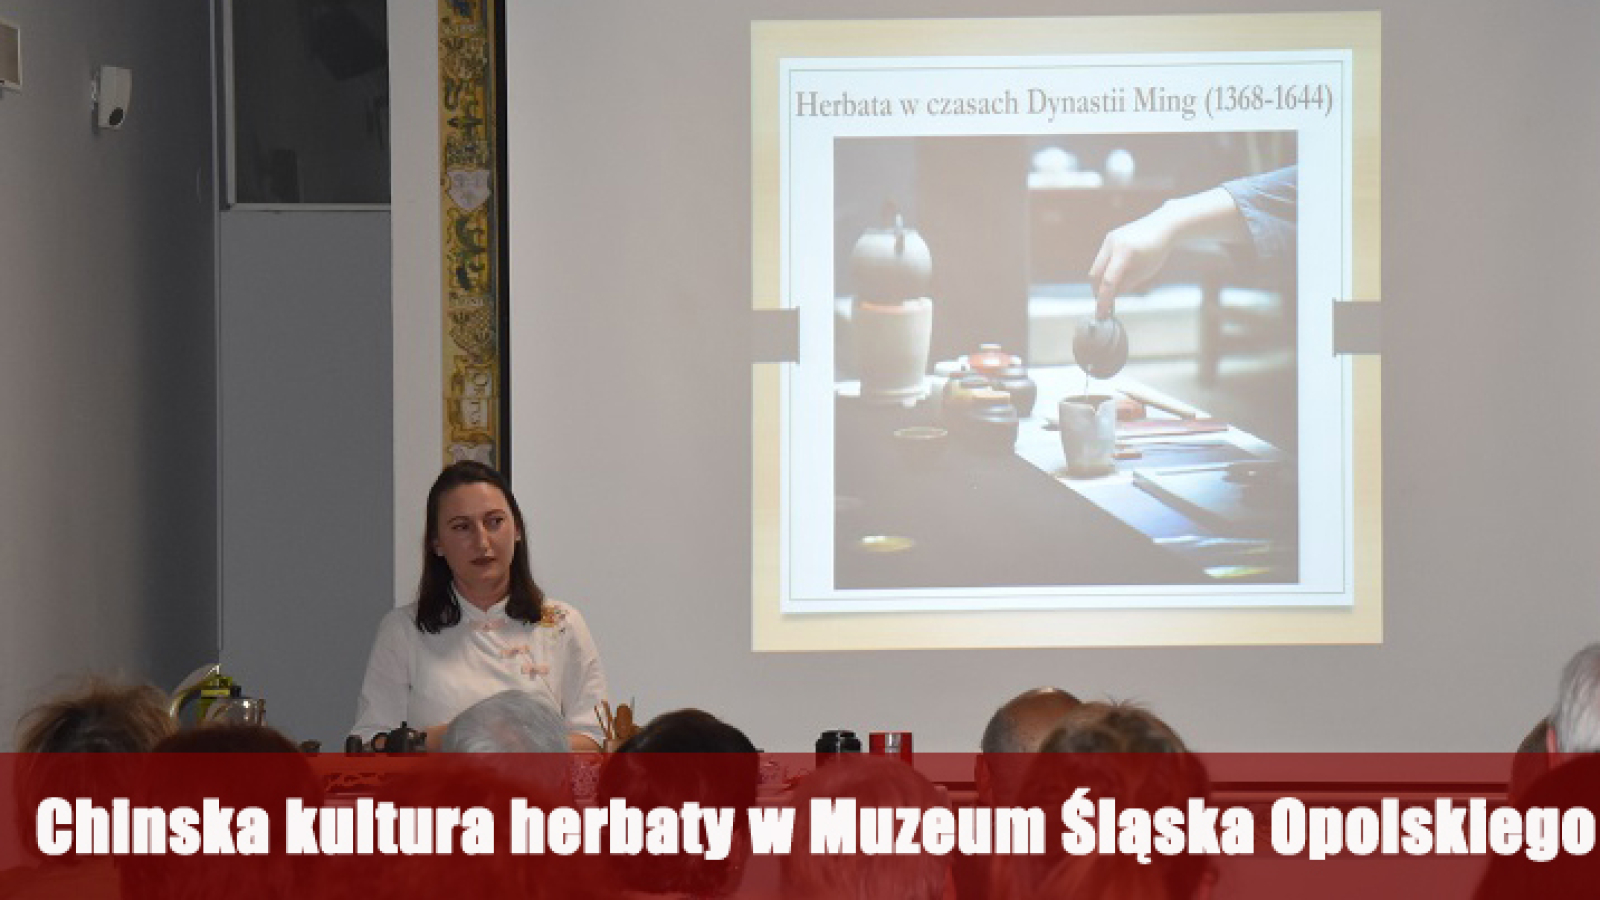 Chinska kultura herbaty w Muzeum Śląska Opolskiego